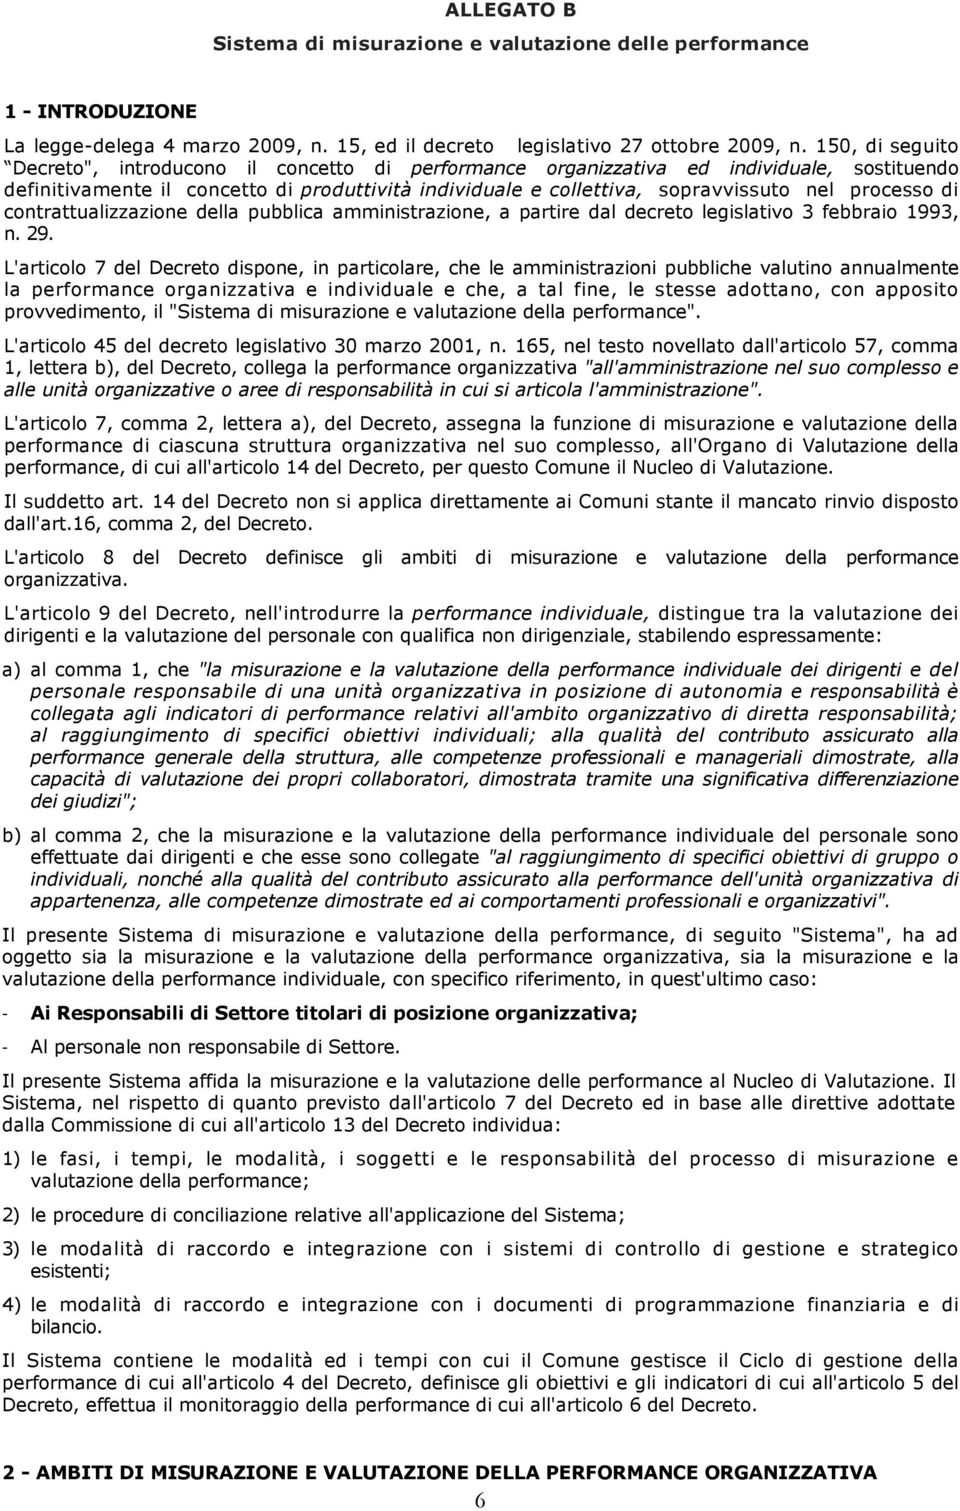 processo di contrattualizzazione della pubblica amministrazione, a partire dal decreto legislativo 3 febbraio 1993, n. 29.